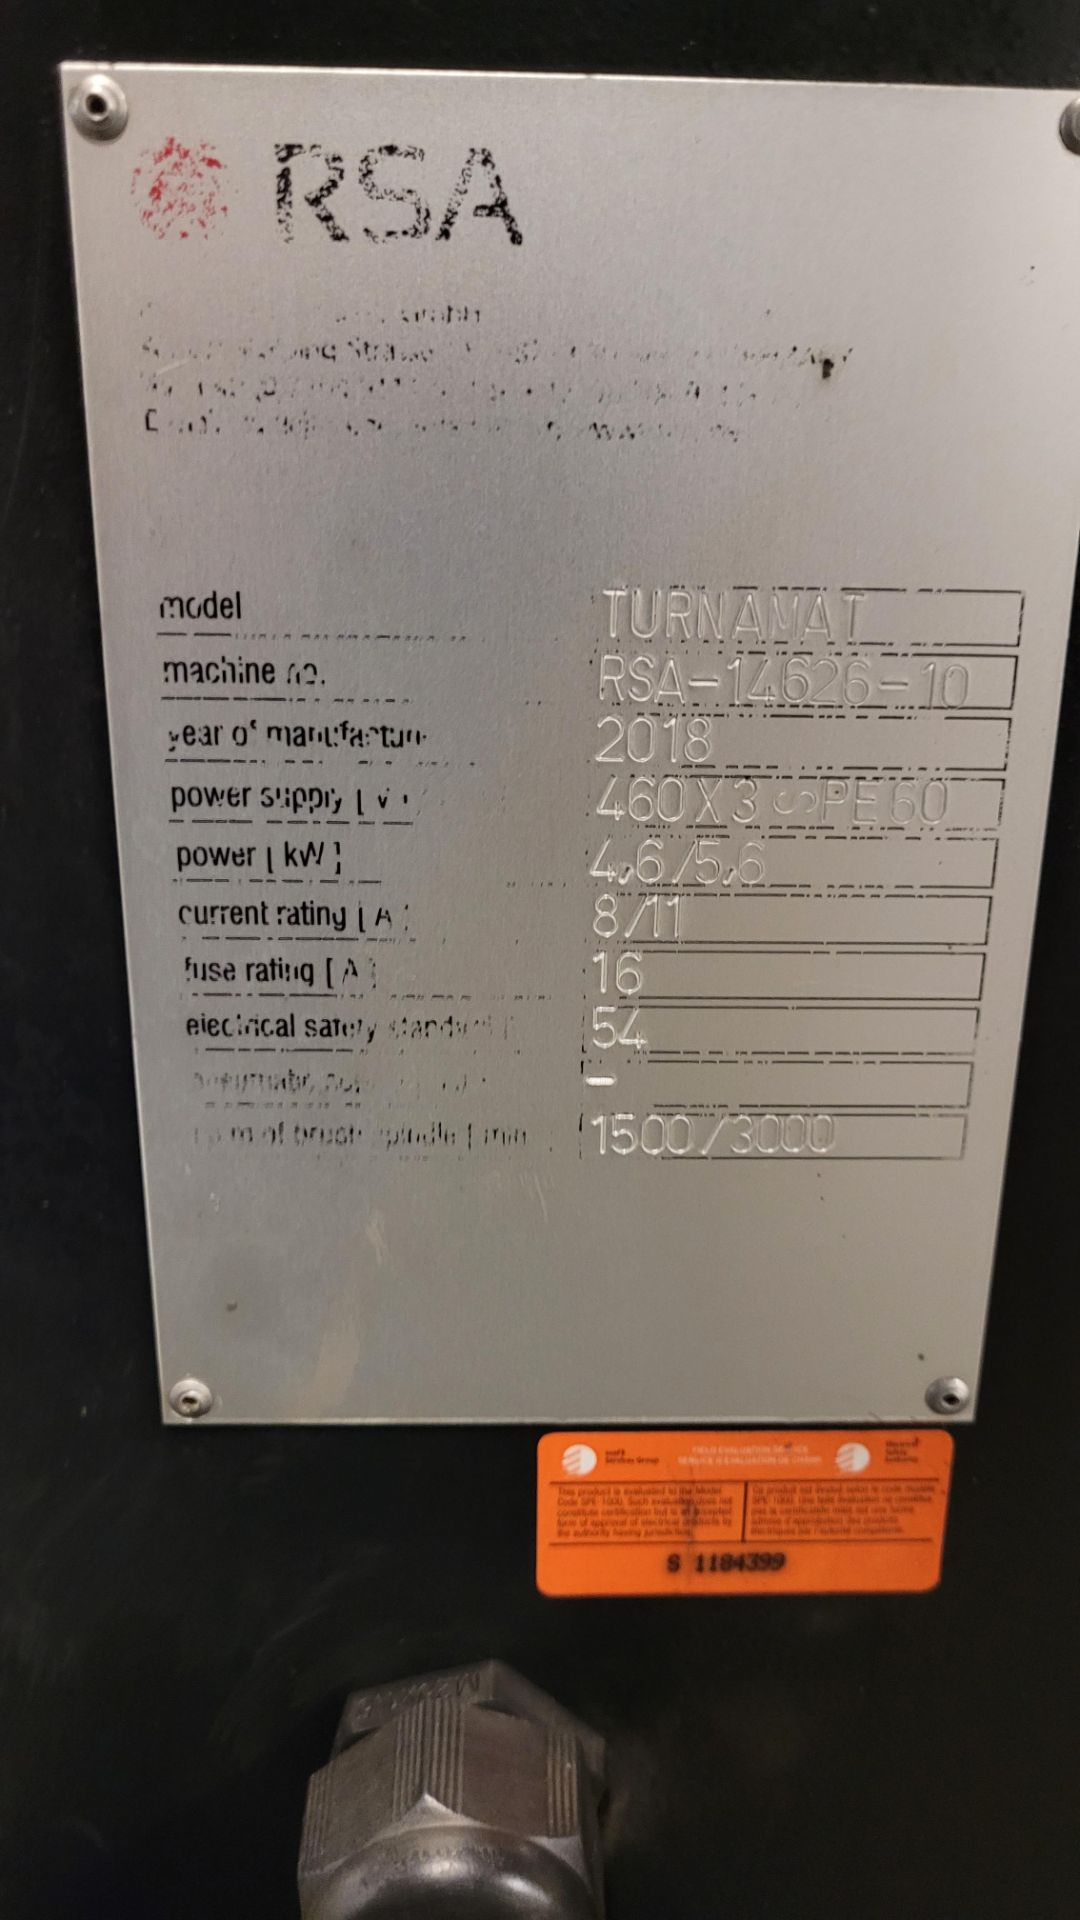 2018 RSA TURNAMAT DEBURRING MACHINE, 1,500 – 3,000 RPM, S/N RSA-14626-10 (RIGGING FEE $50) - Image 3 of 4